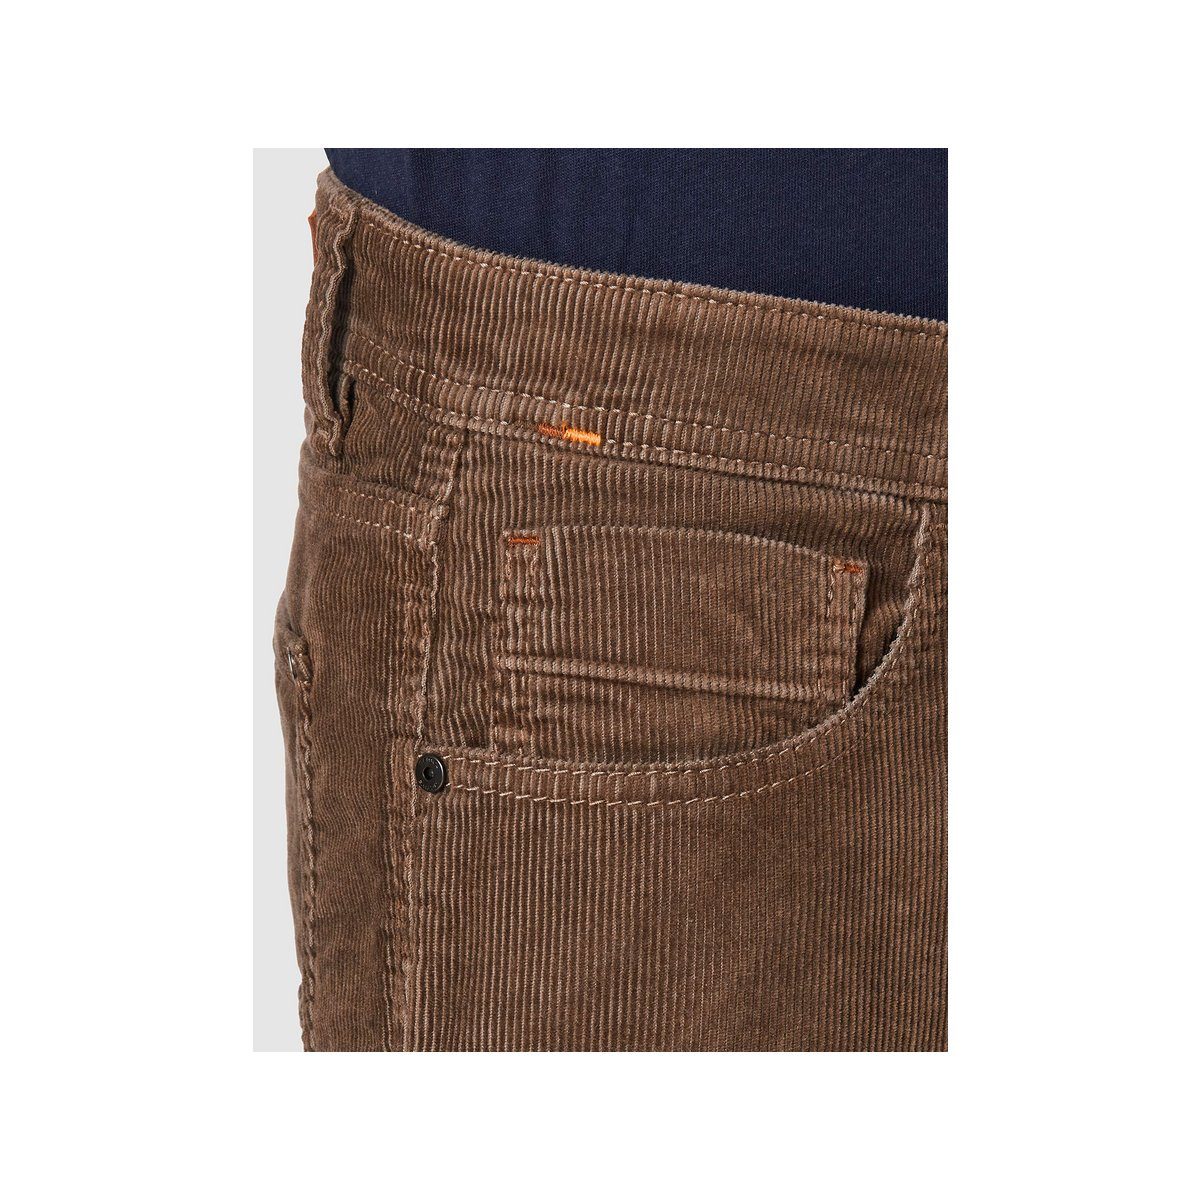 camel active 5-Pocket-Jeans uni (1-tlg)